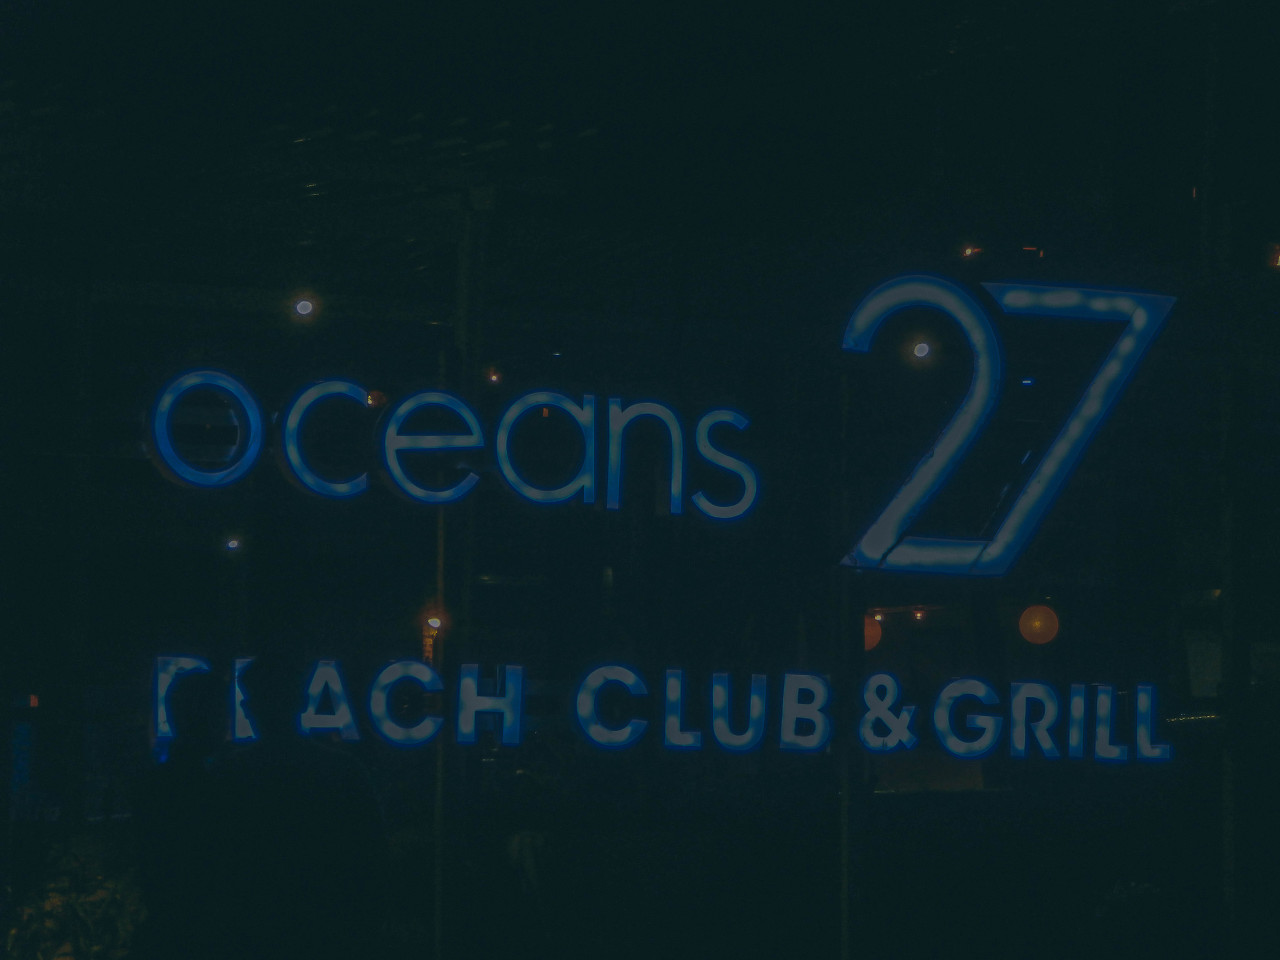 Oceans 27